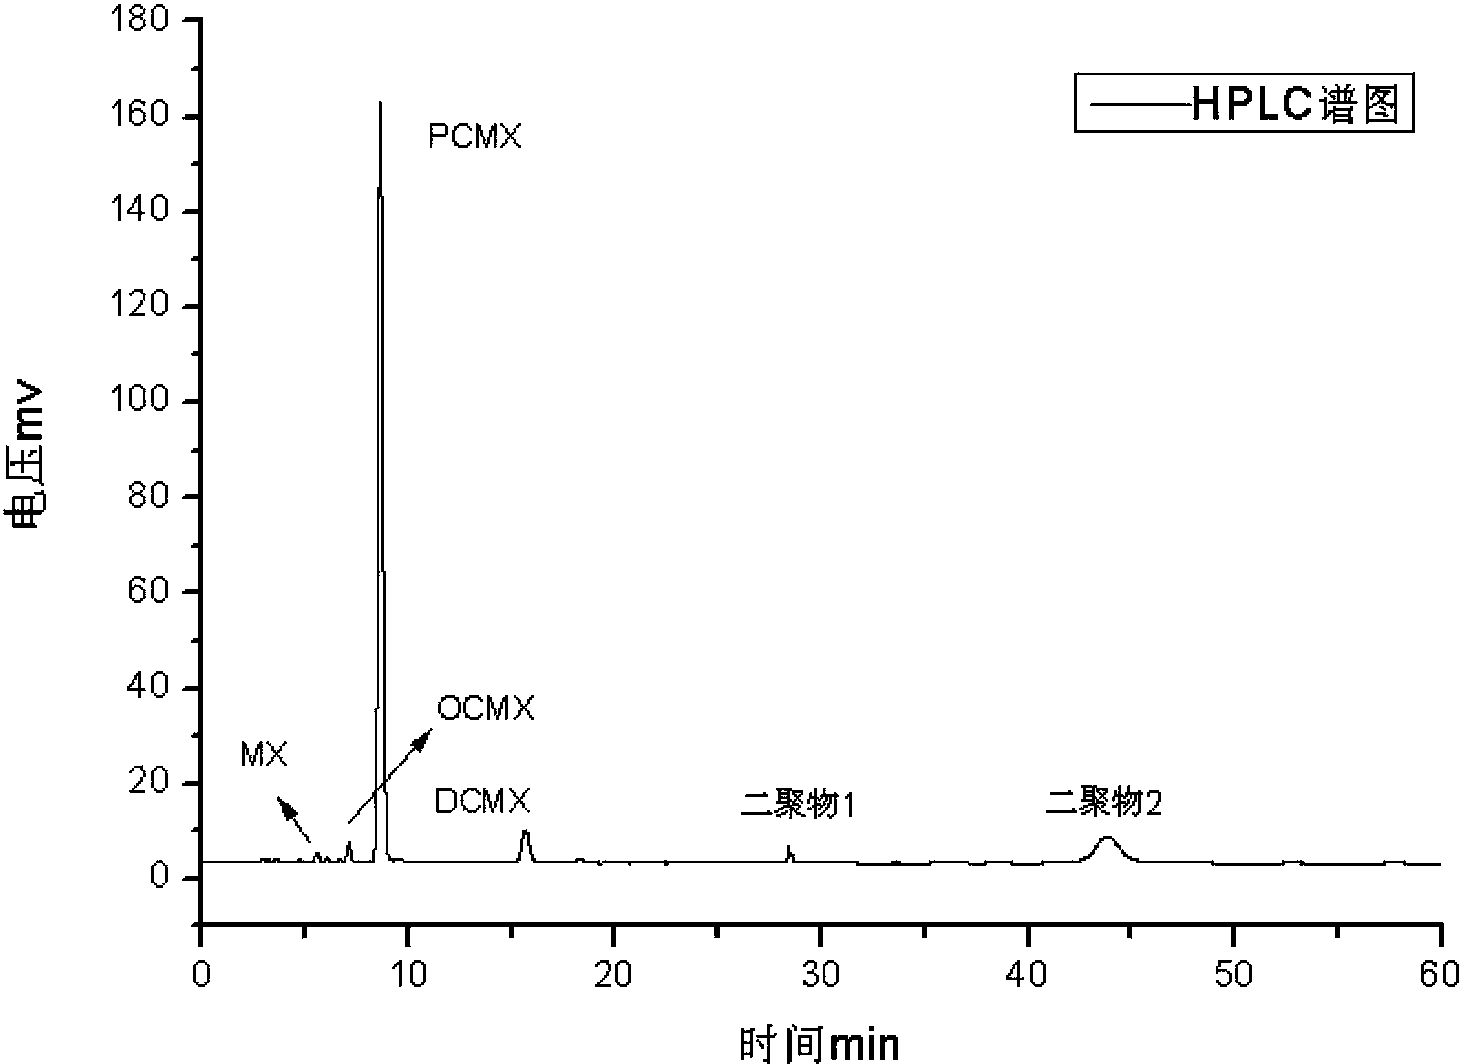 Preparing method for 4-chlorine-3,5-xylenol